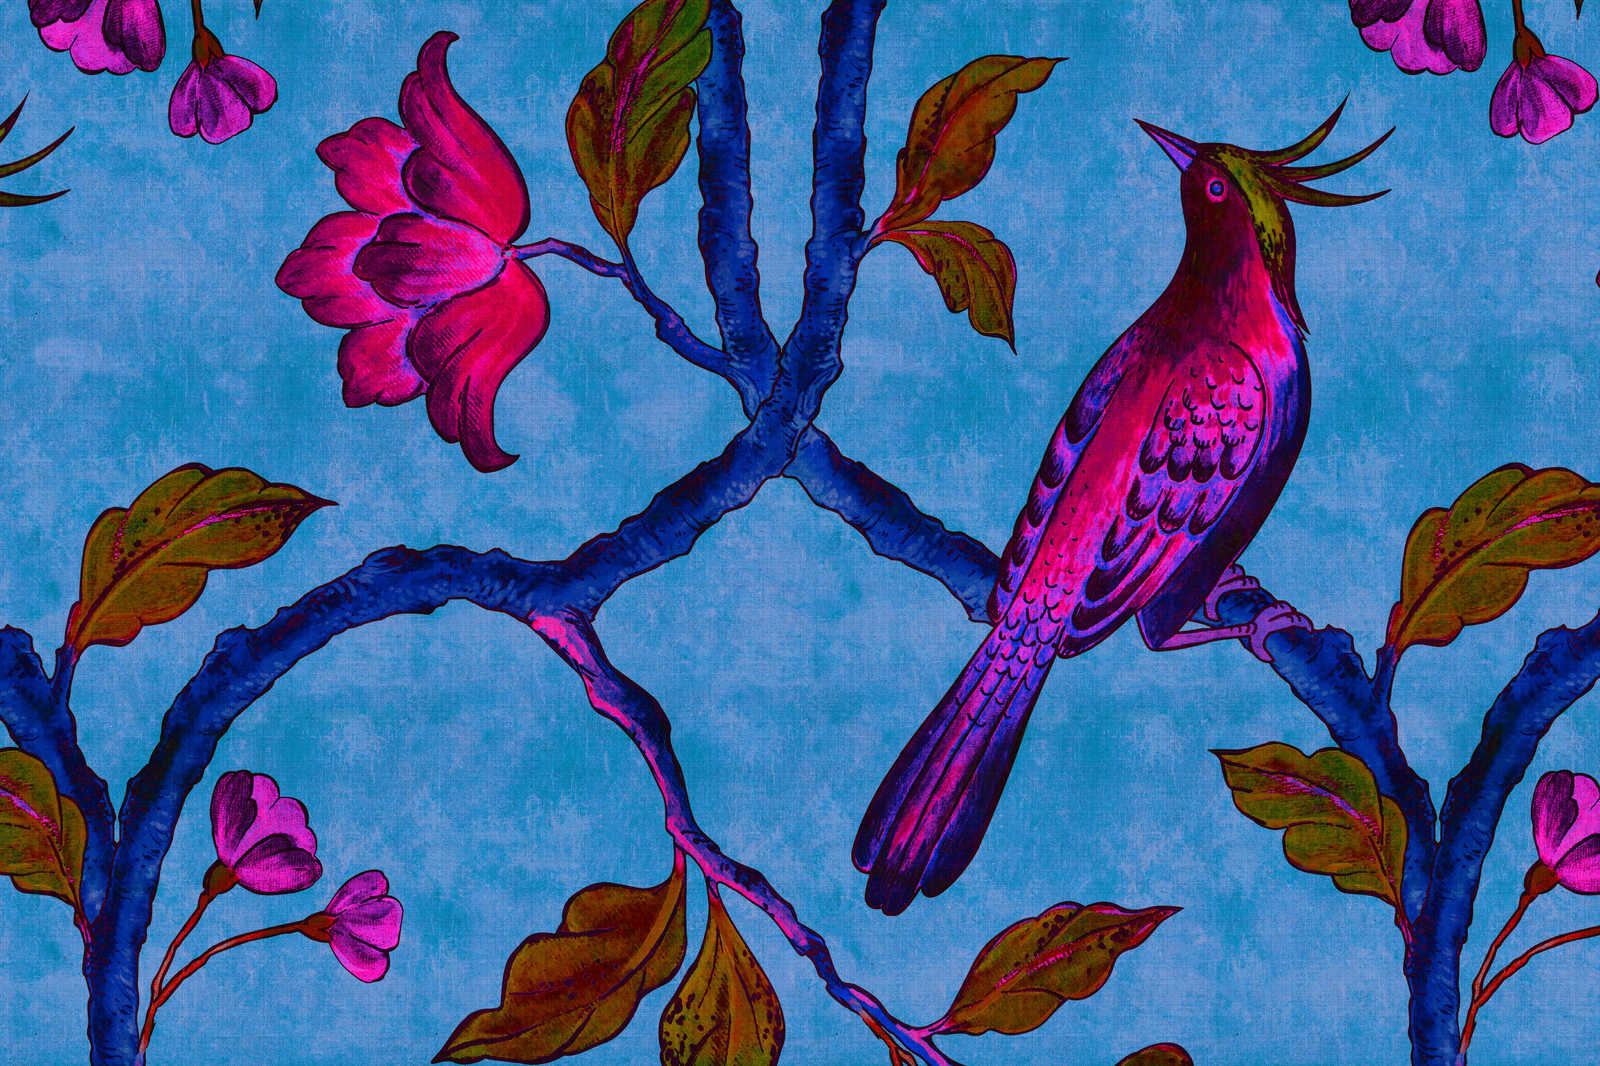             Bird Of Paradis 1 - Tableau toile structure lin naturel avec oiseau de paradis - 0,90 m x 0,60 m
        